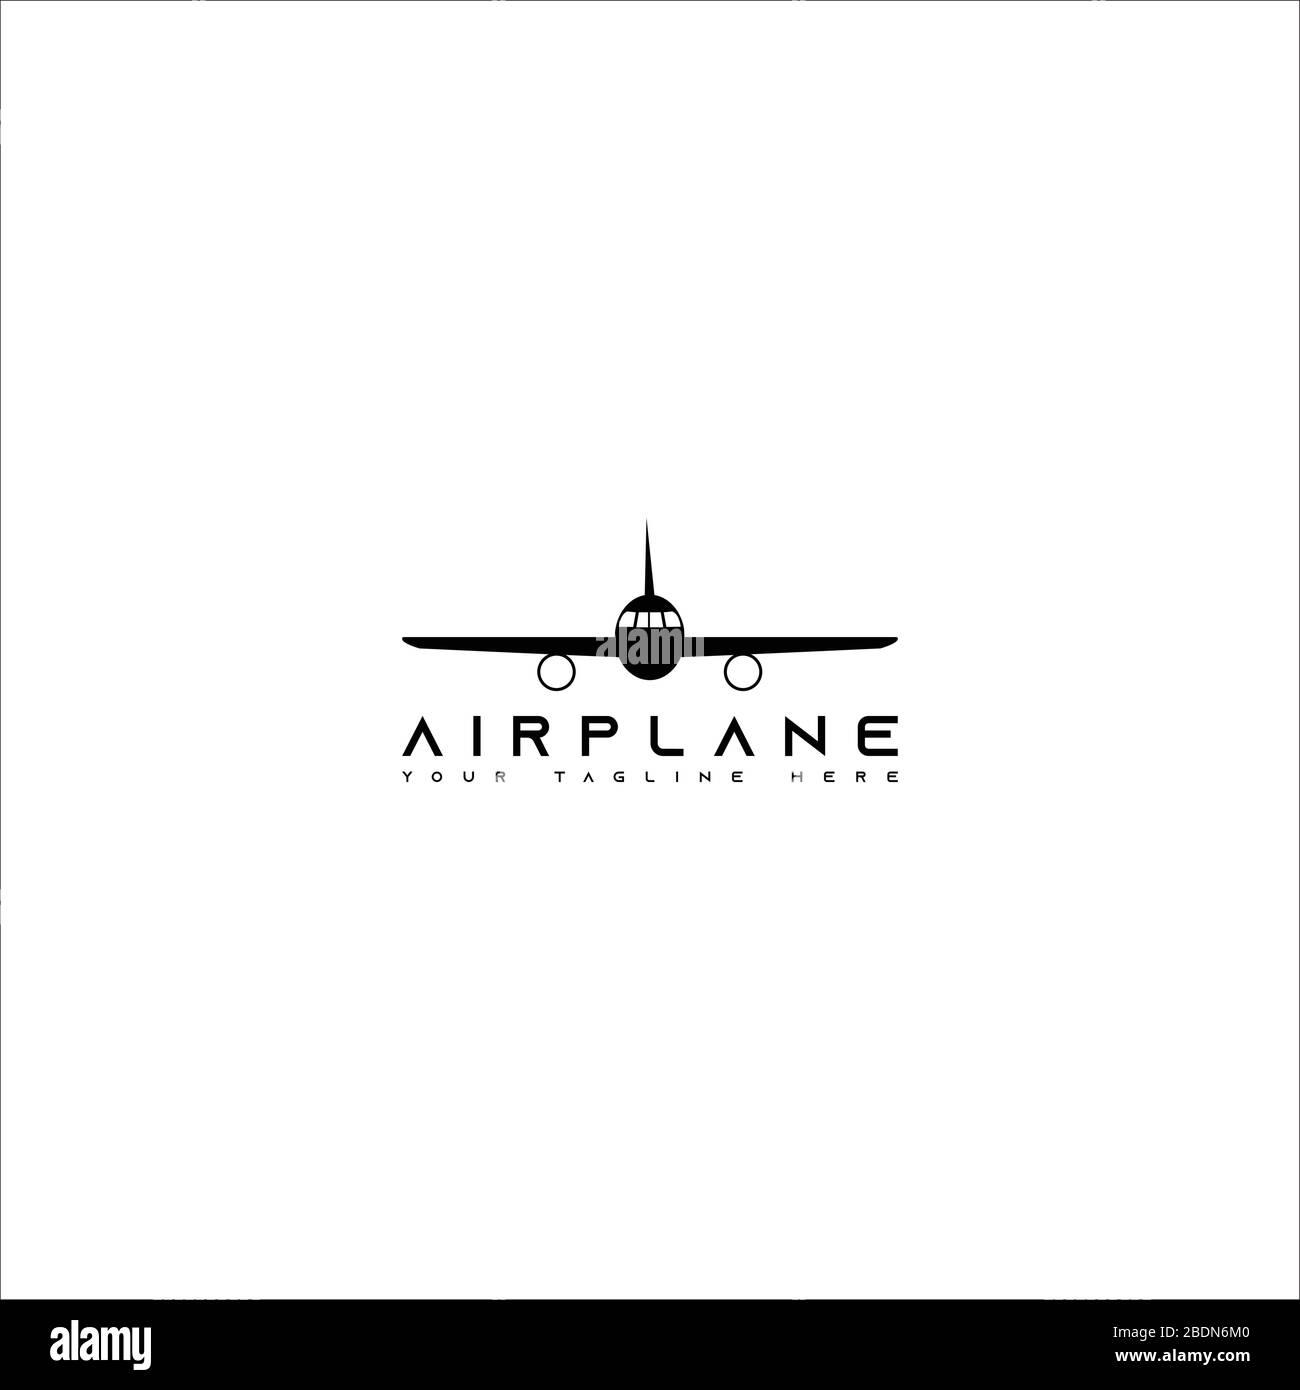 Questo logo raffigura gli aerei. Questo logo è buono per l'uso da parte di aziende o imprese impegnate nel settore dell'aviazione. Illustrazione Vettoriale